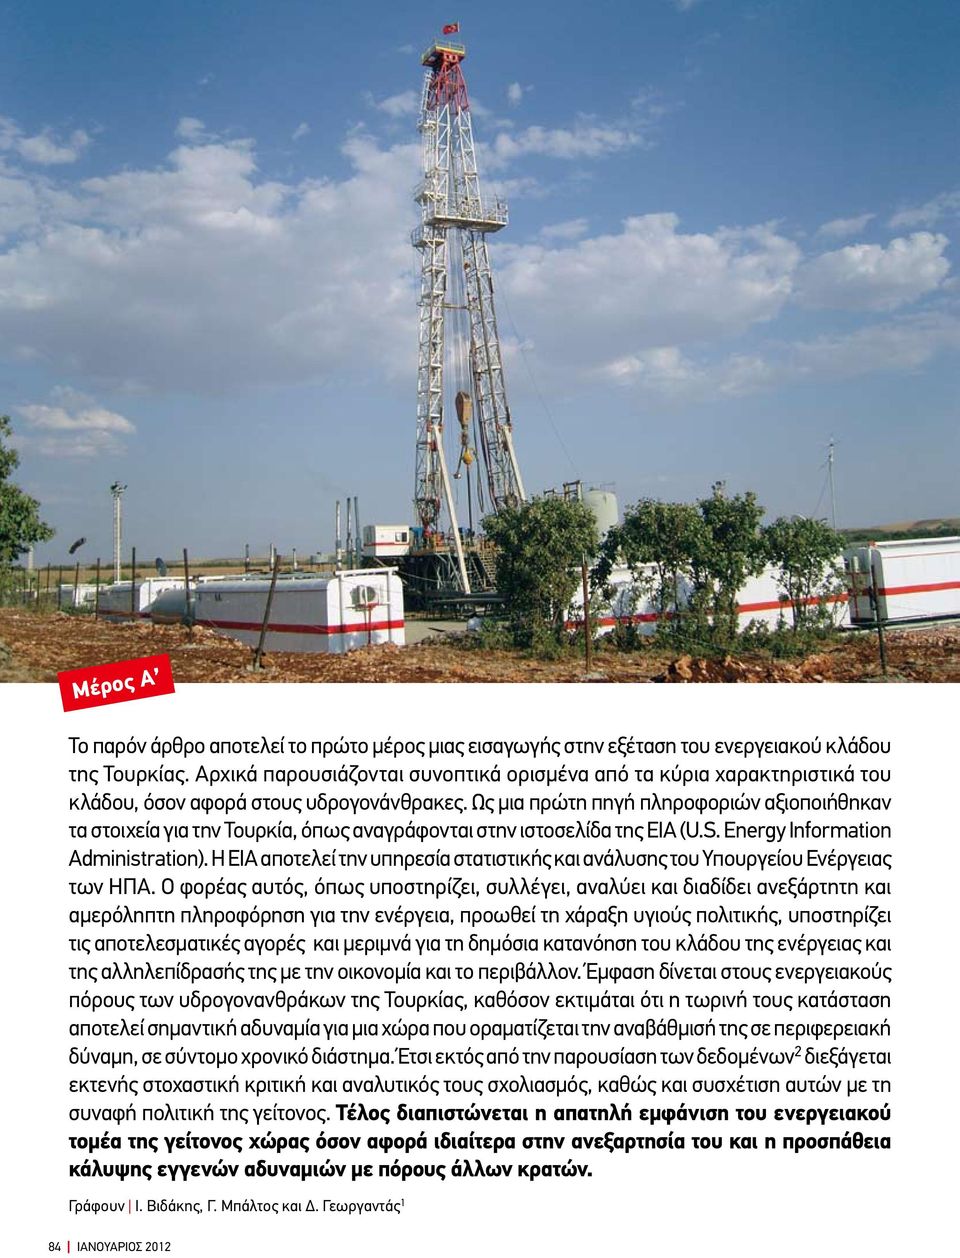 Ως μια πρώτη πηγή πληροφοριών αξιοποιήθηκαν τα στοιχεία για την Τουρκία, όπως αναγράφονται στην ιστοσελίδα της EIA (U.S. Energy Information Administration).